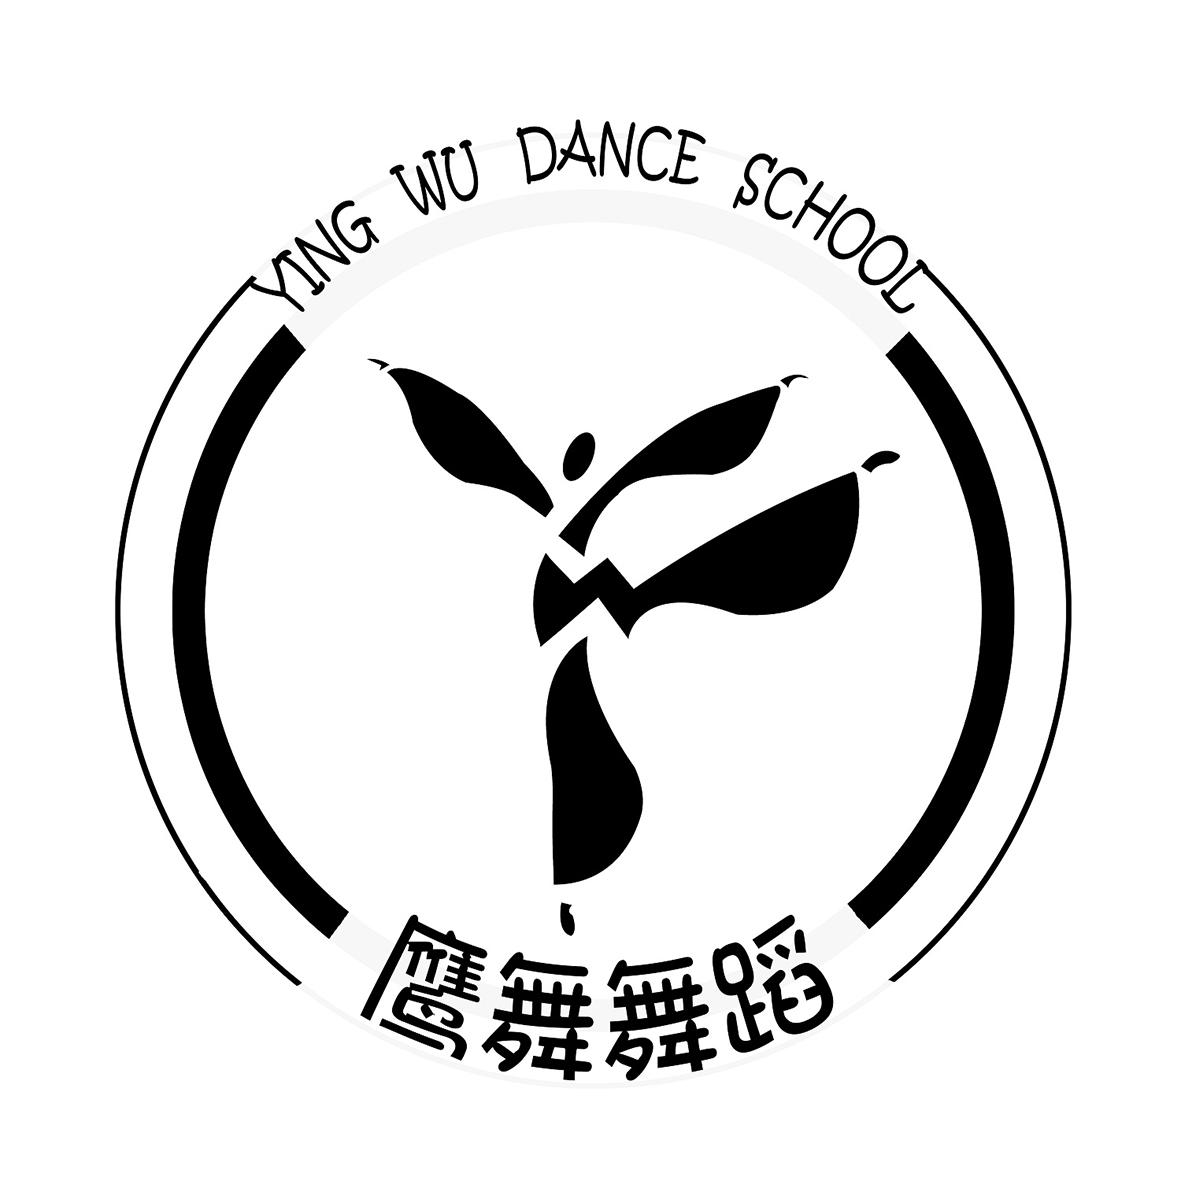 鹰舞舞蹈 ying wu dance school 商标公告